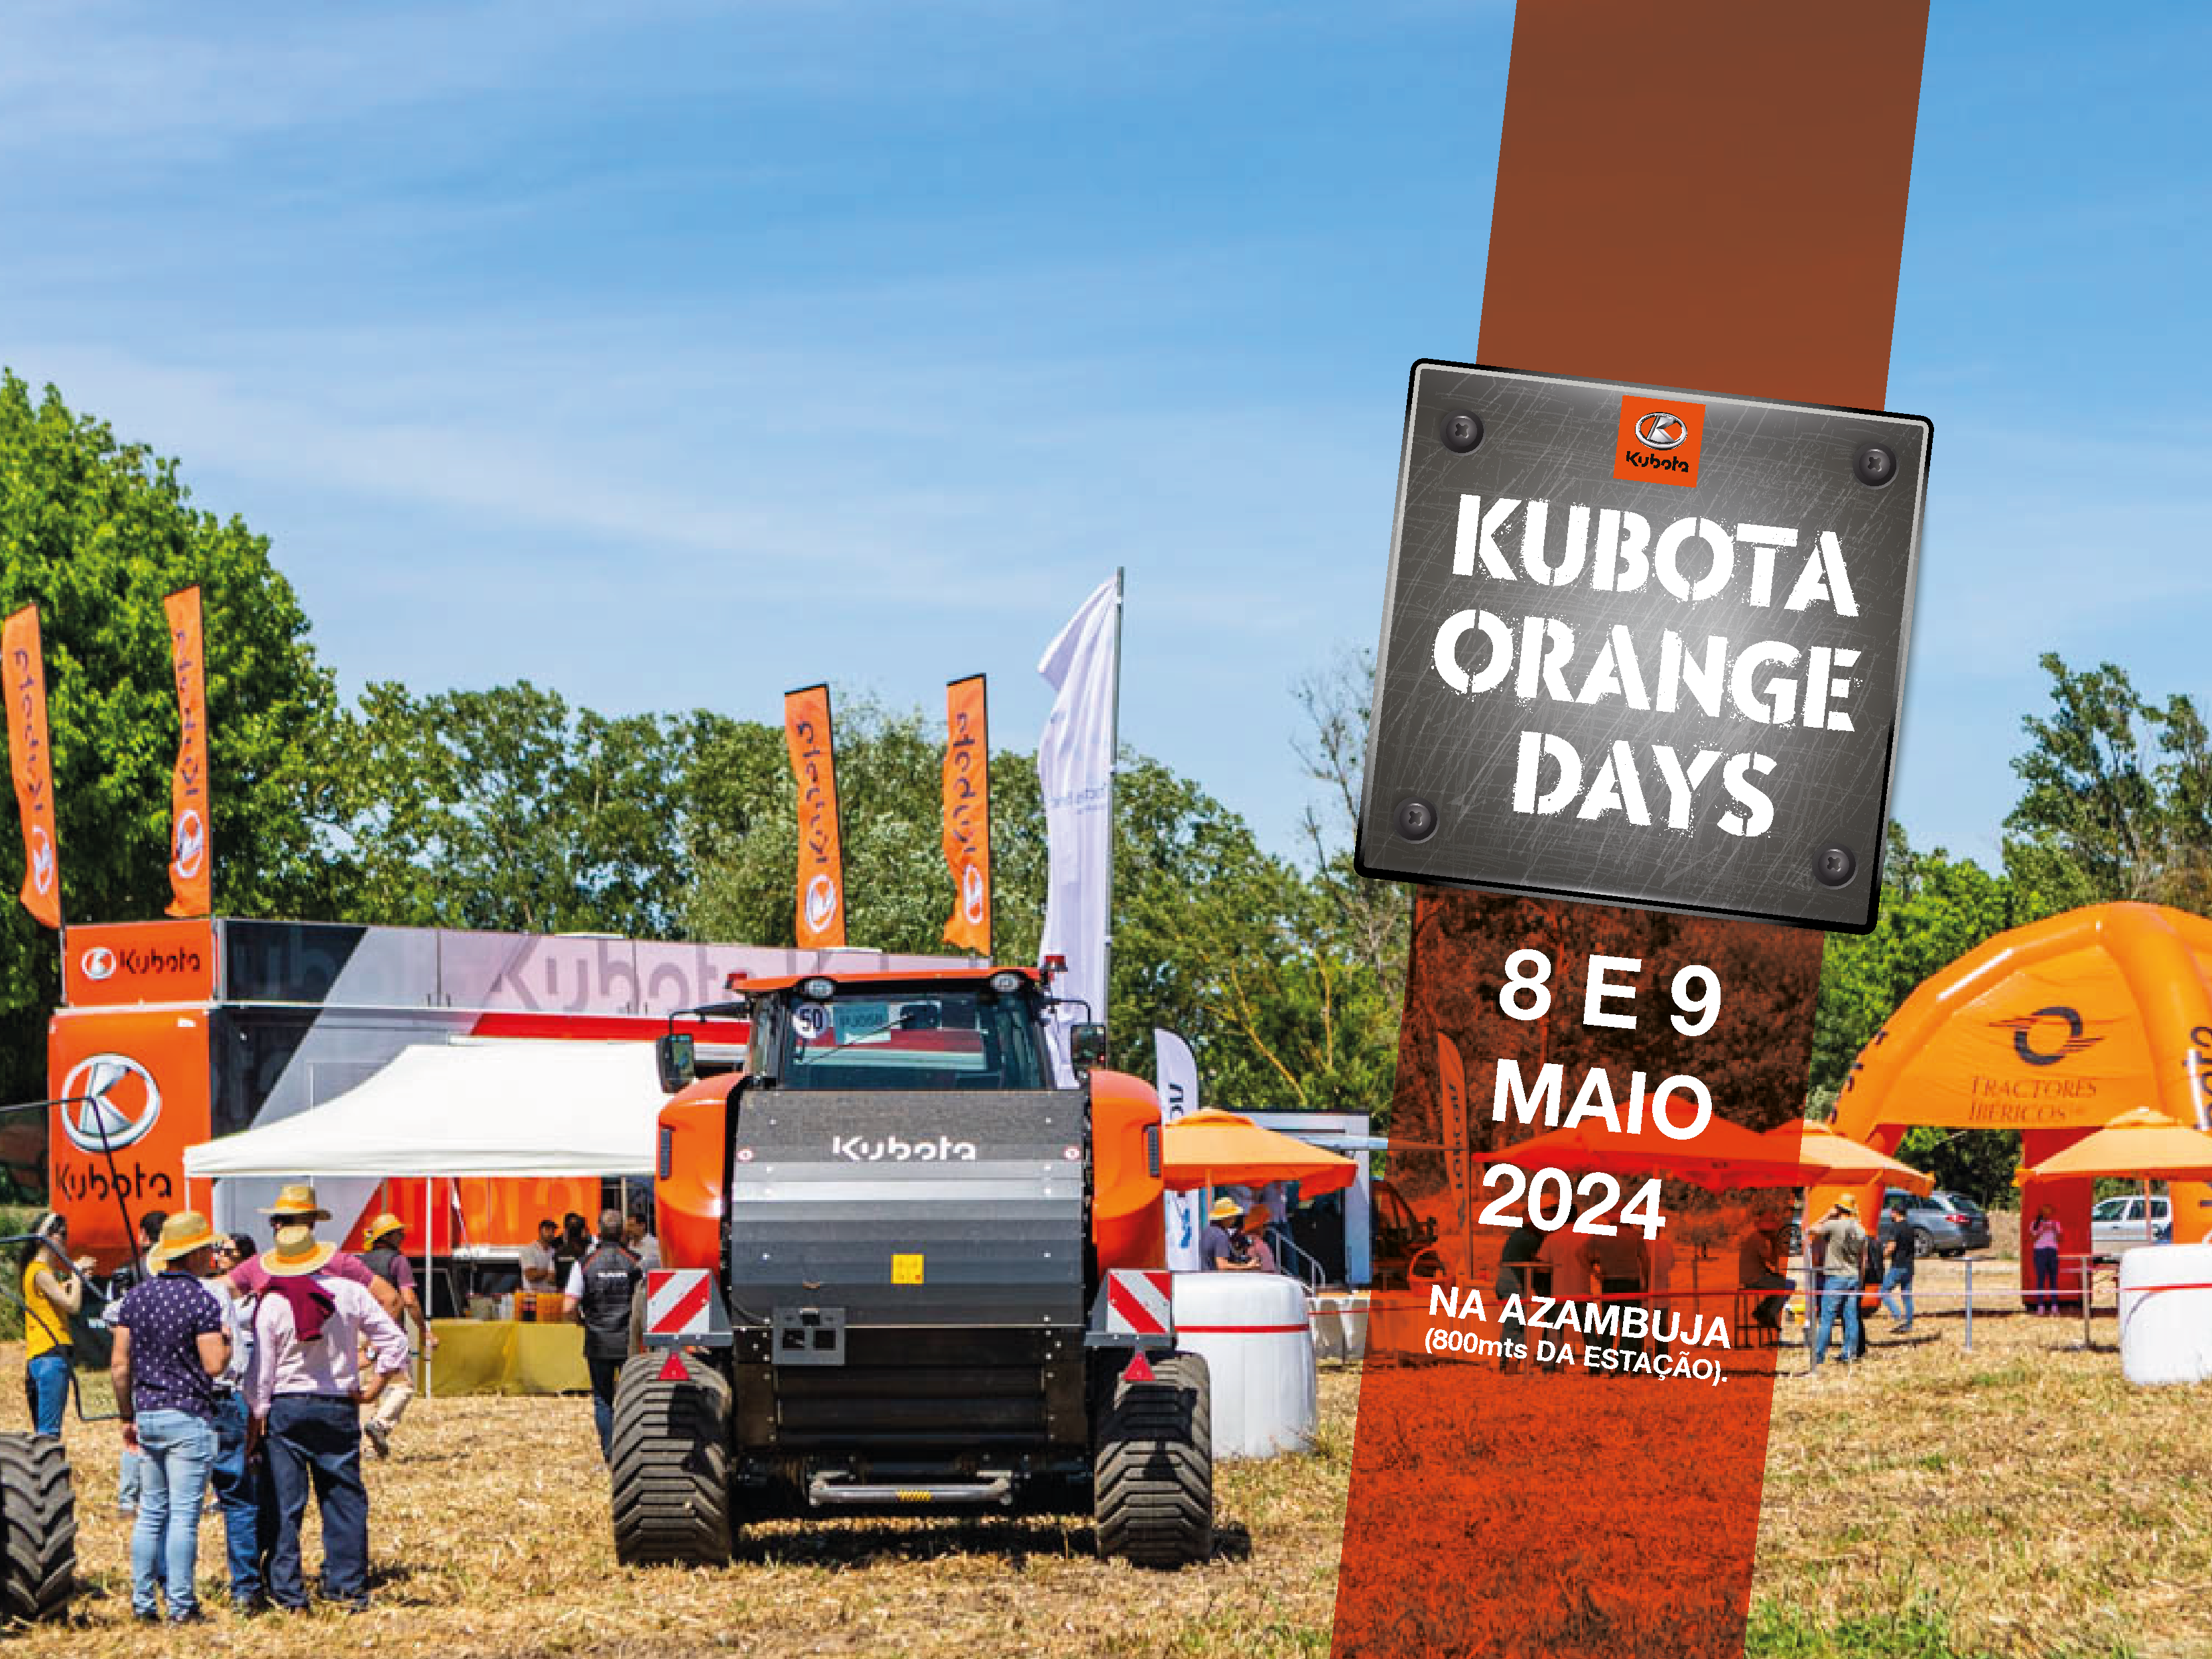 Kubota Orange Days 2024